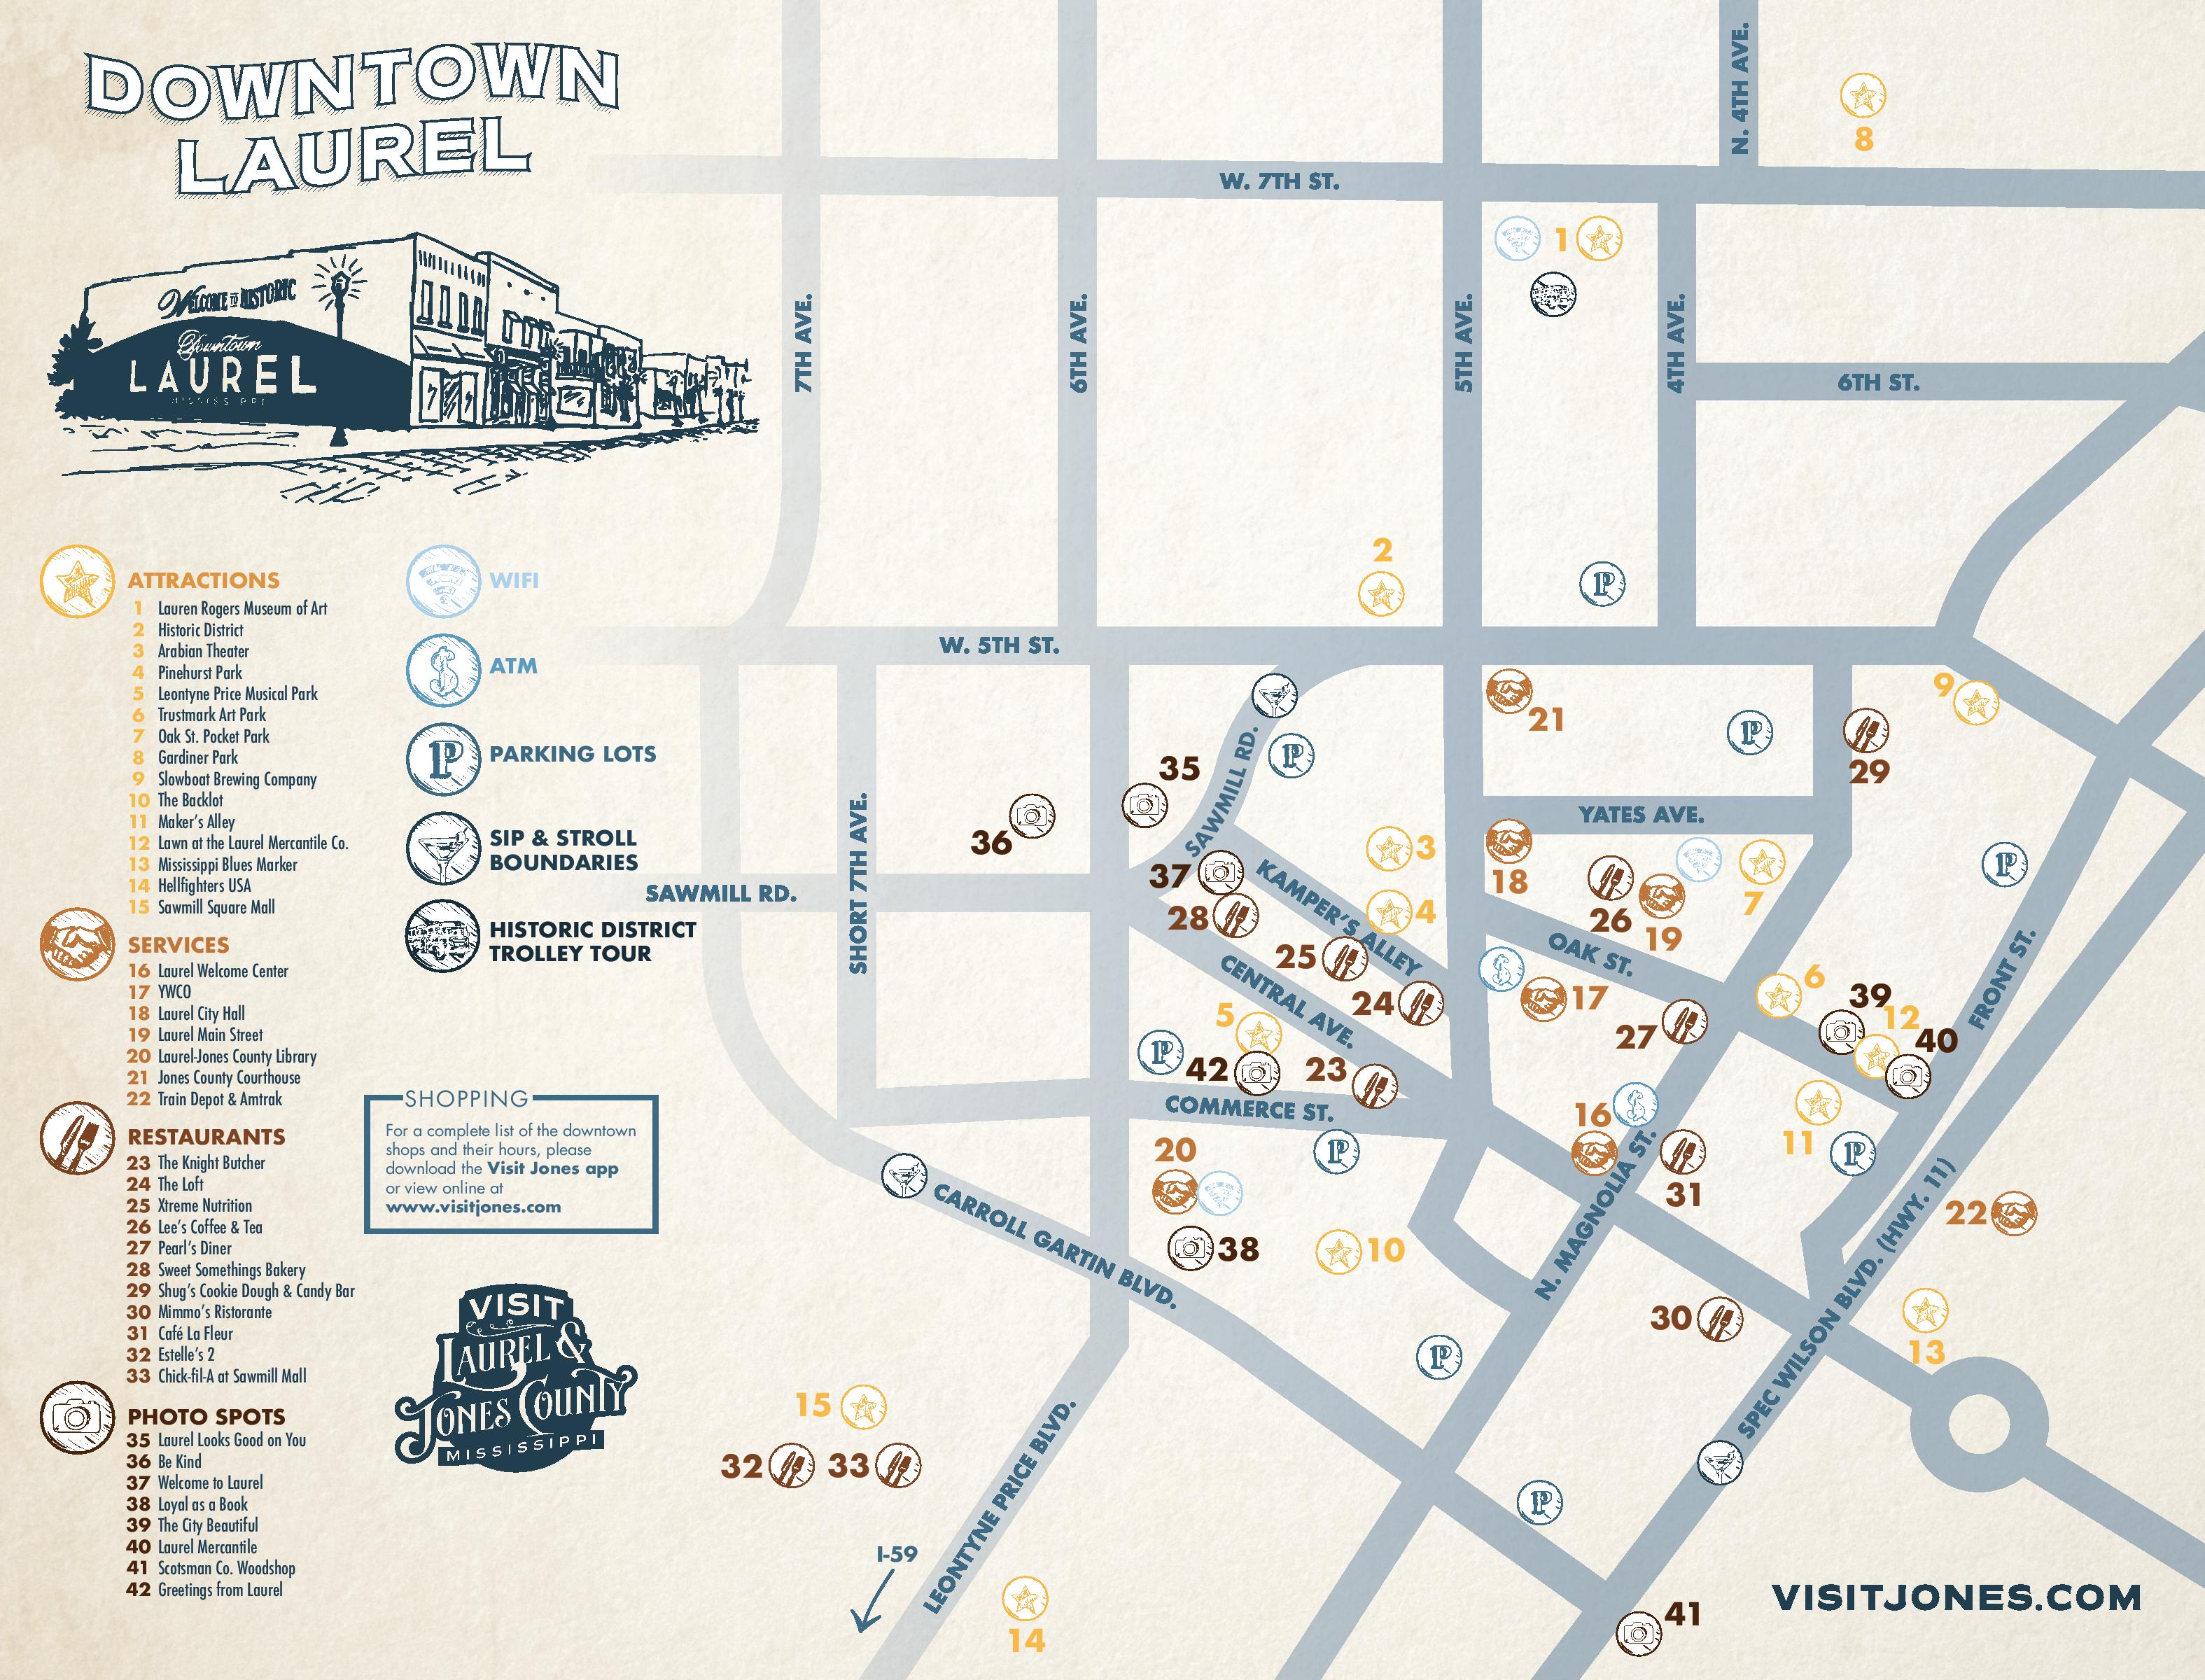 Downtown Laurel Jones County Map | VisitJones.com